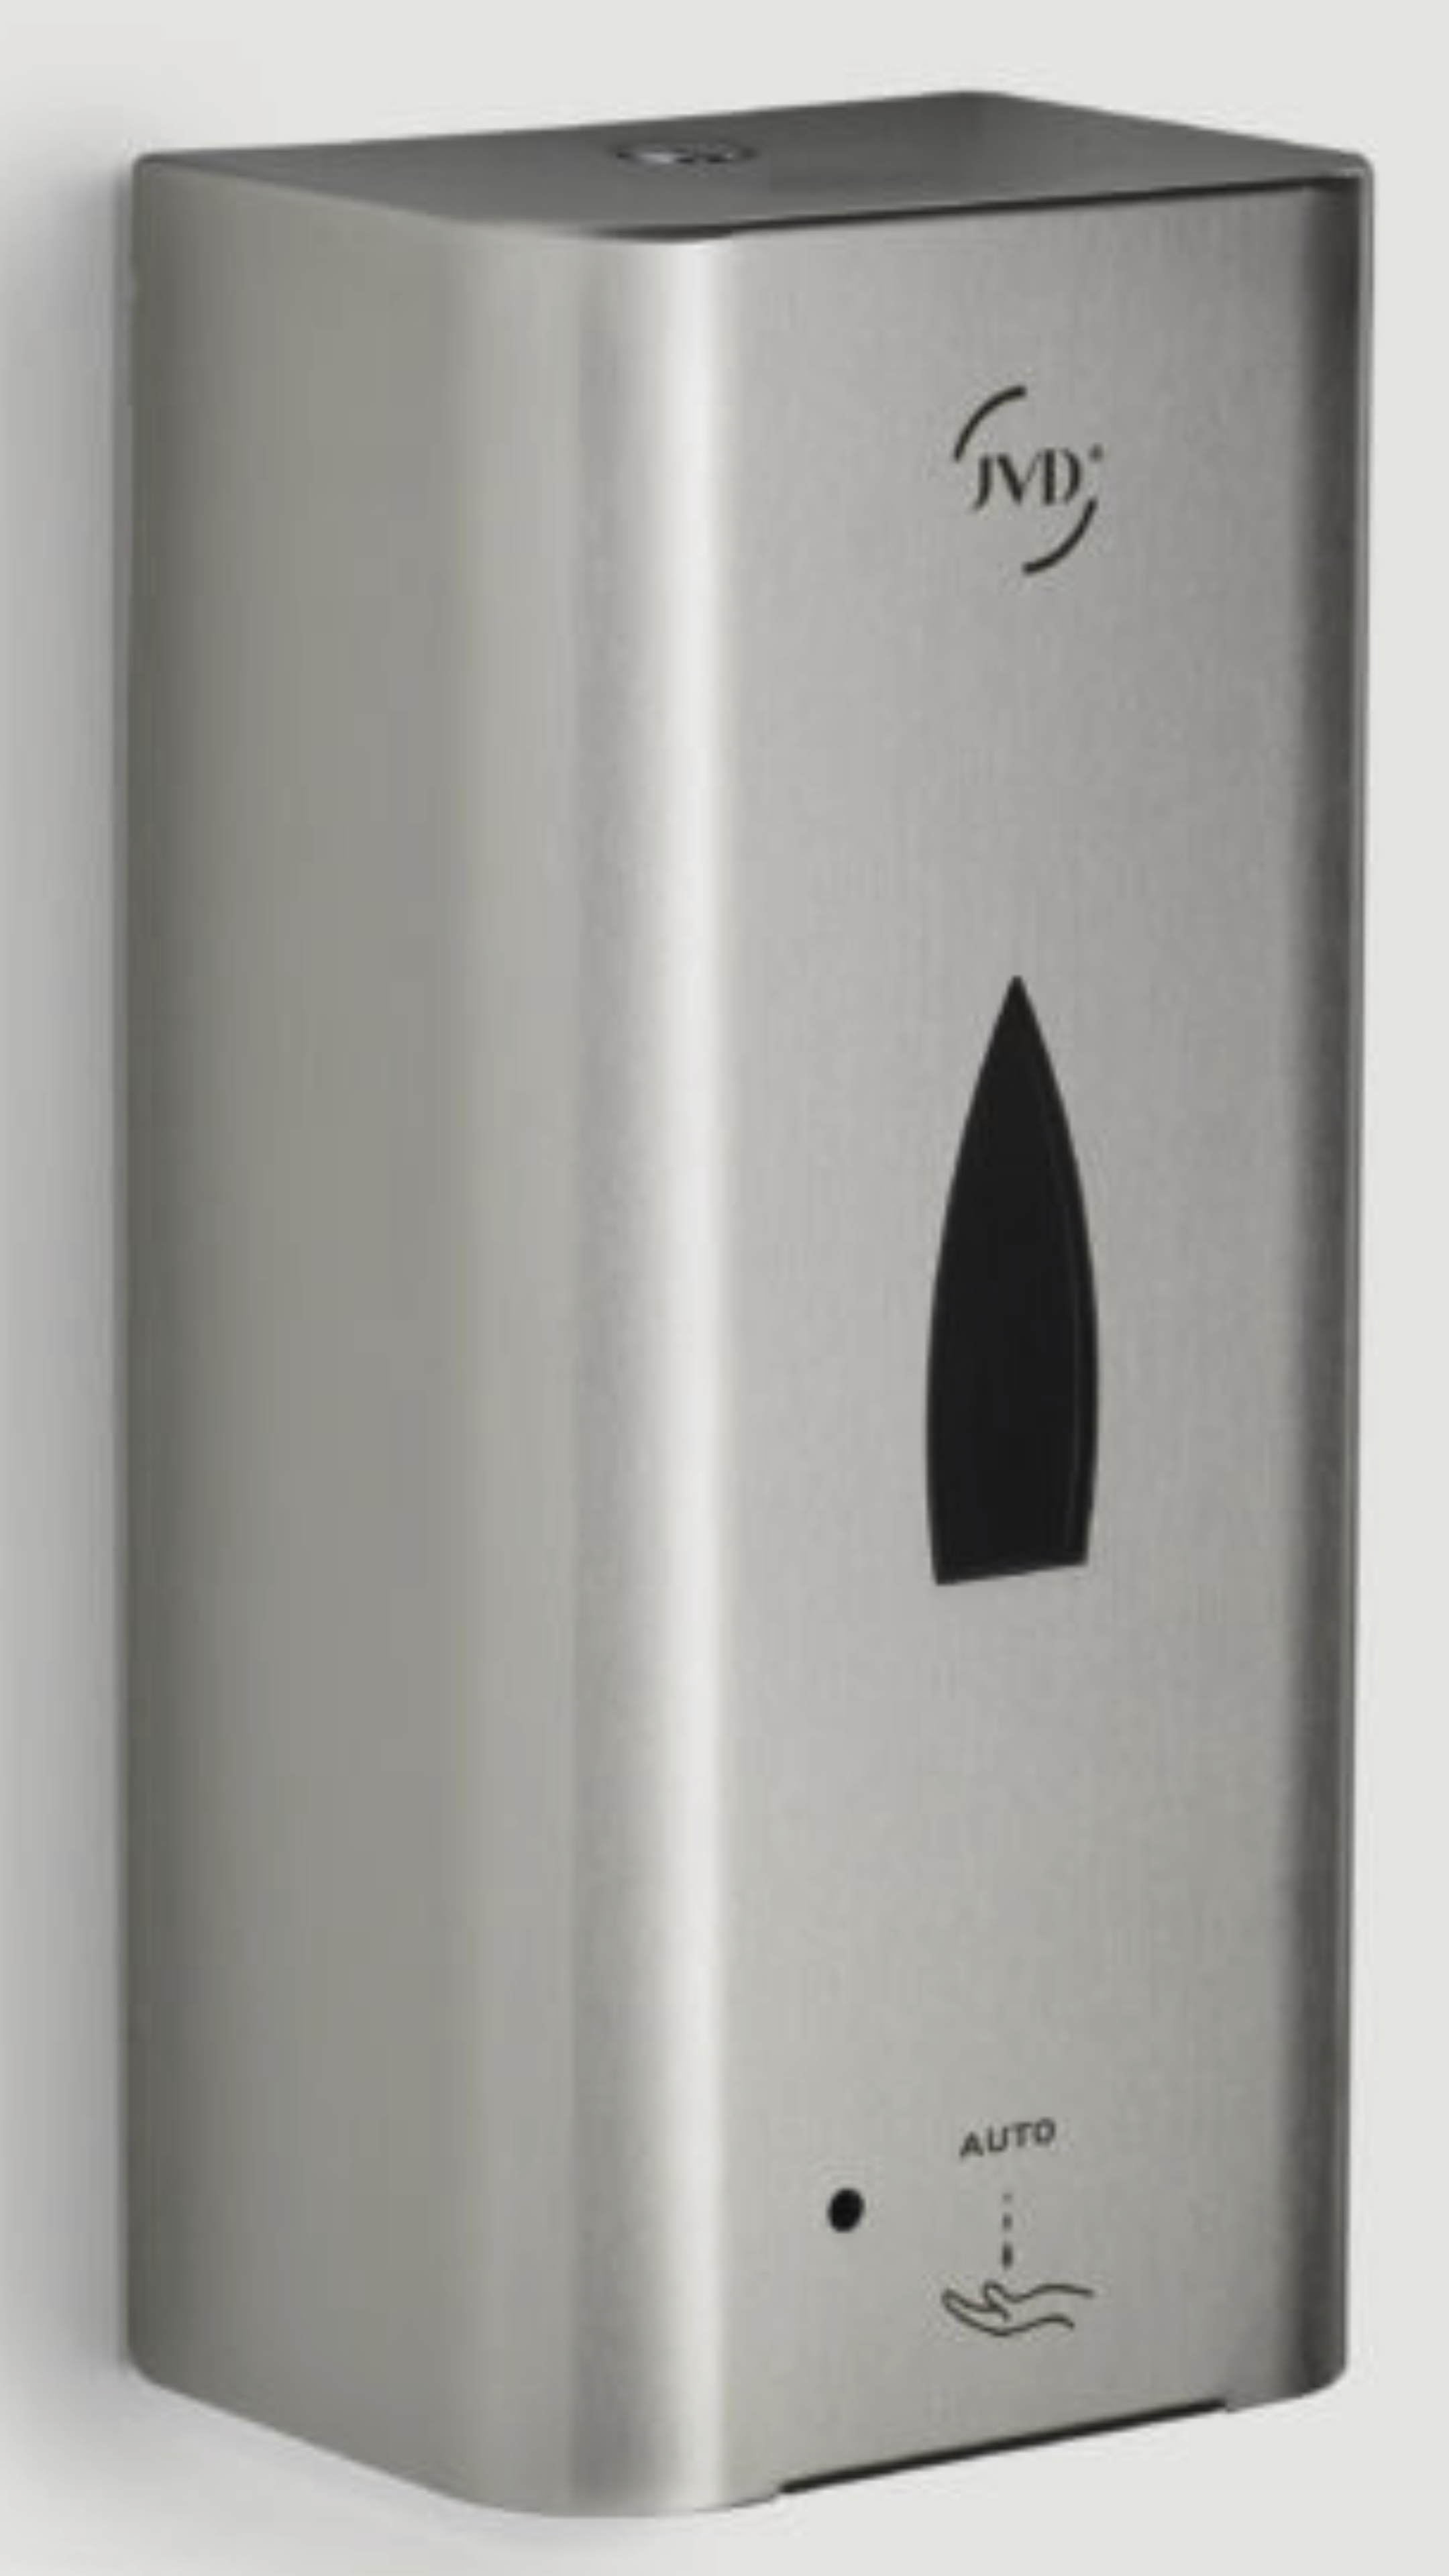 Titan automatischer Seifenspender JVD / Grau / YALISS Silber